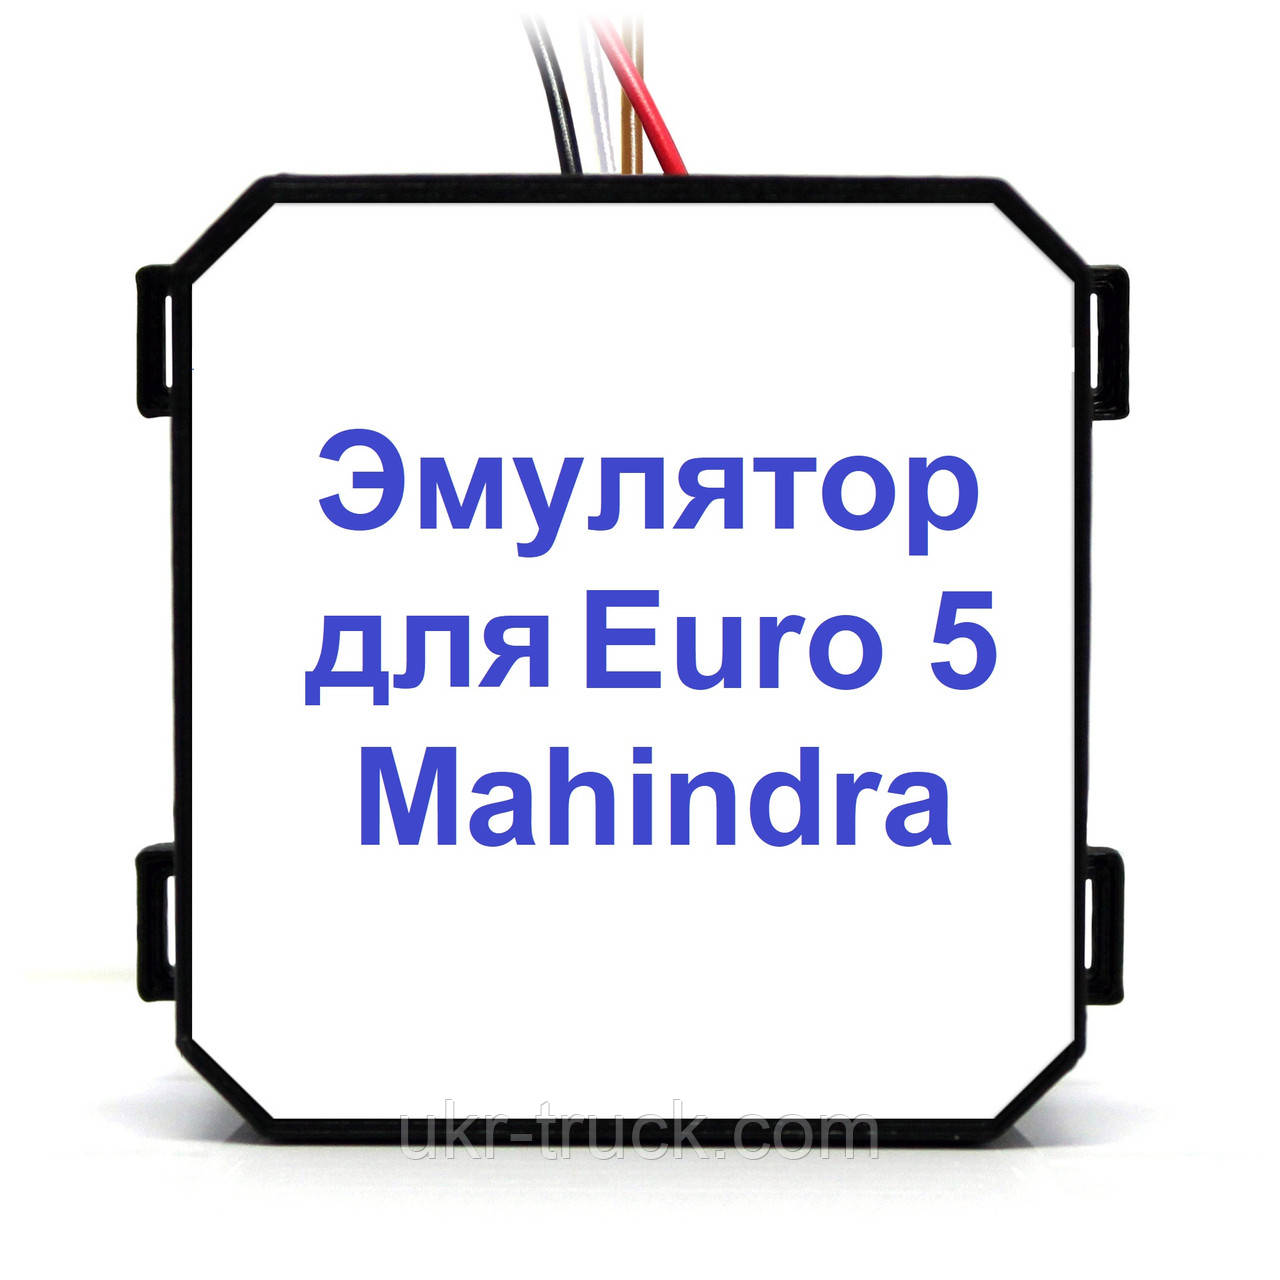 Емулятор видалення Adlue Mahindra Euro 5